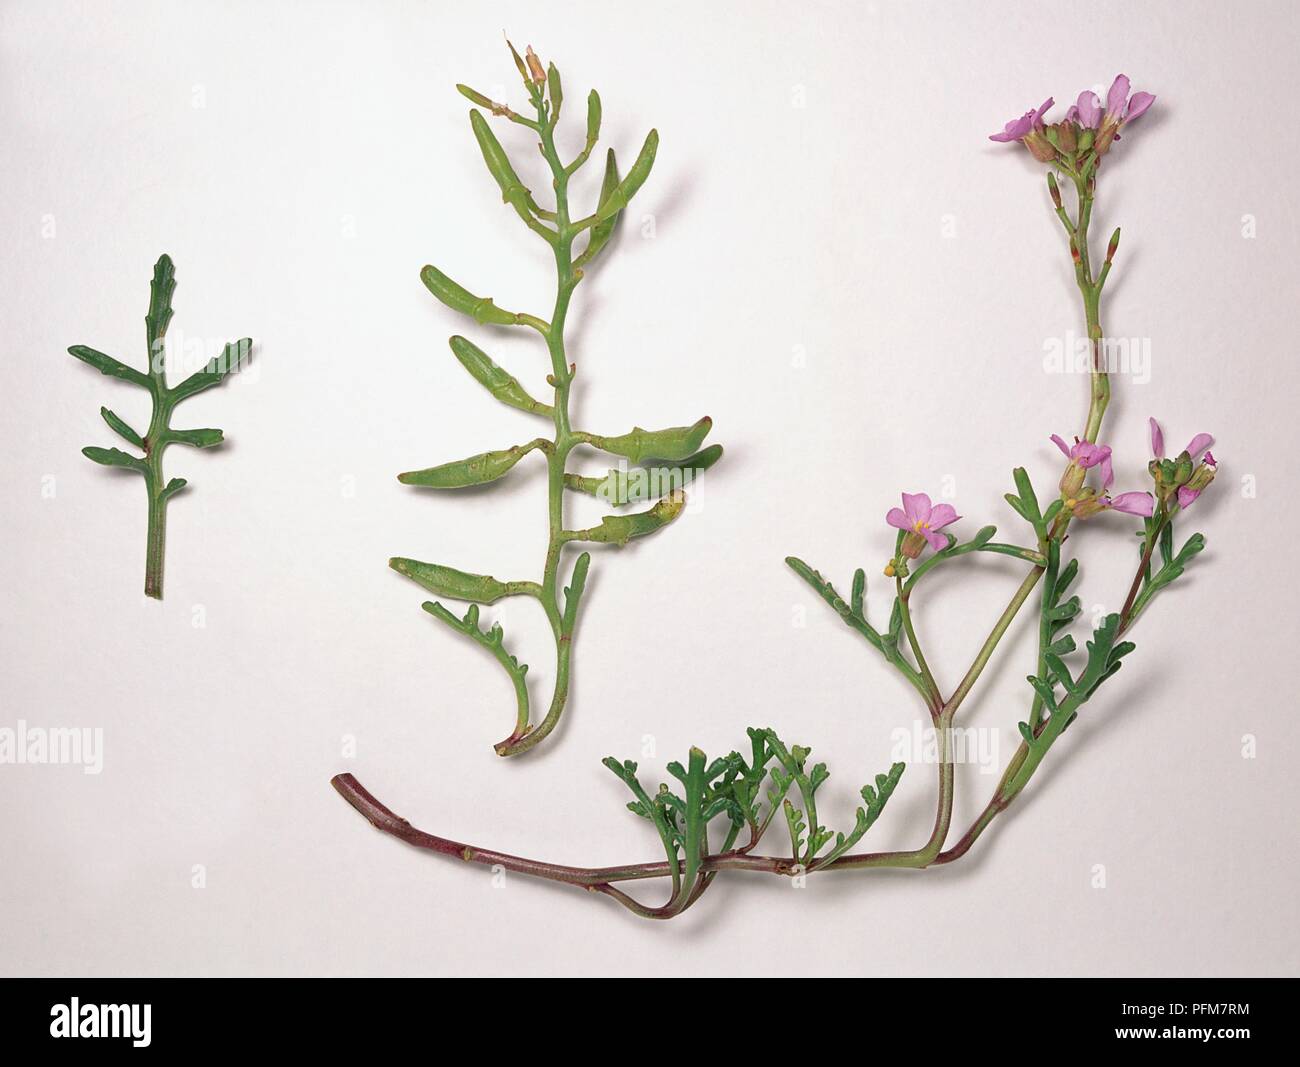 Cakile maritima (Sea rocket), stems with leaves, and stems with leaves and purple-pink flowers Stock Photo